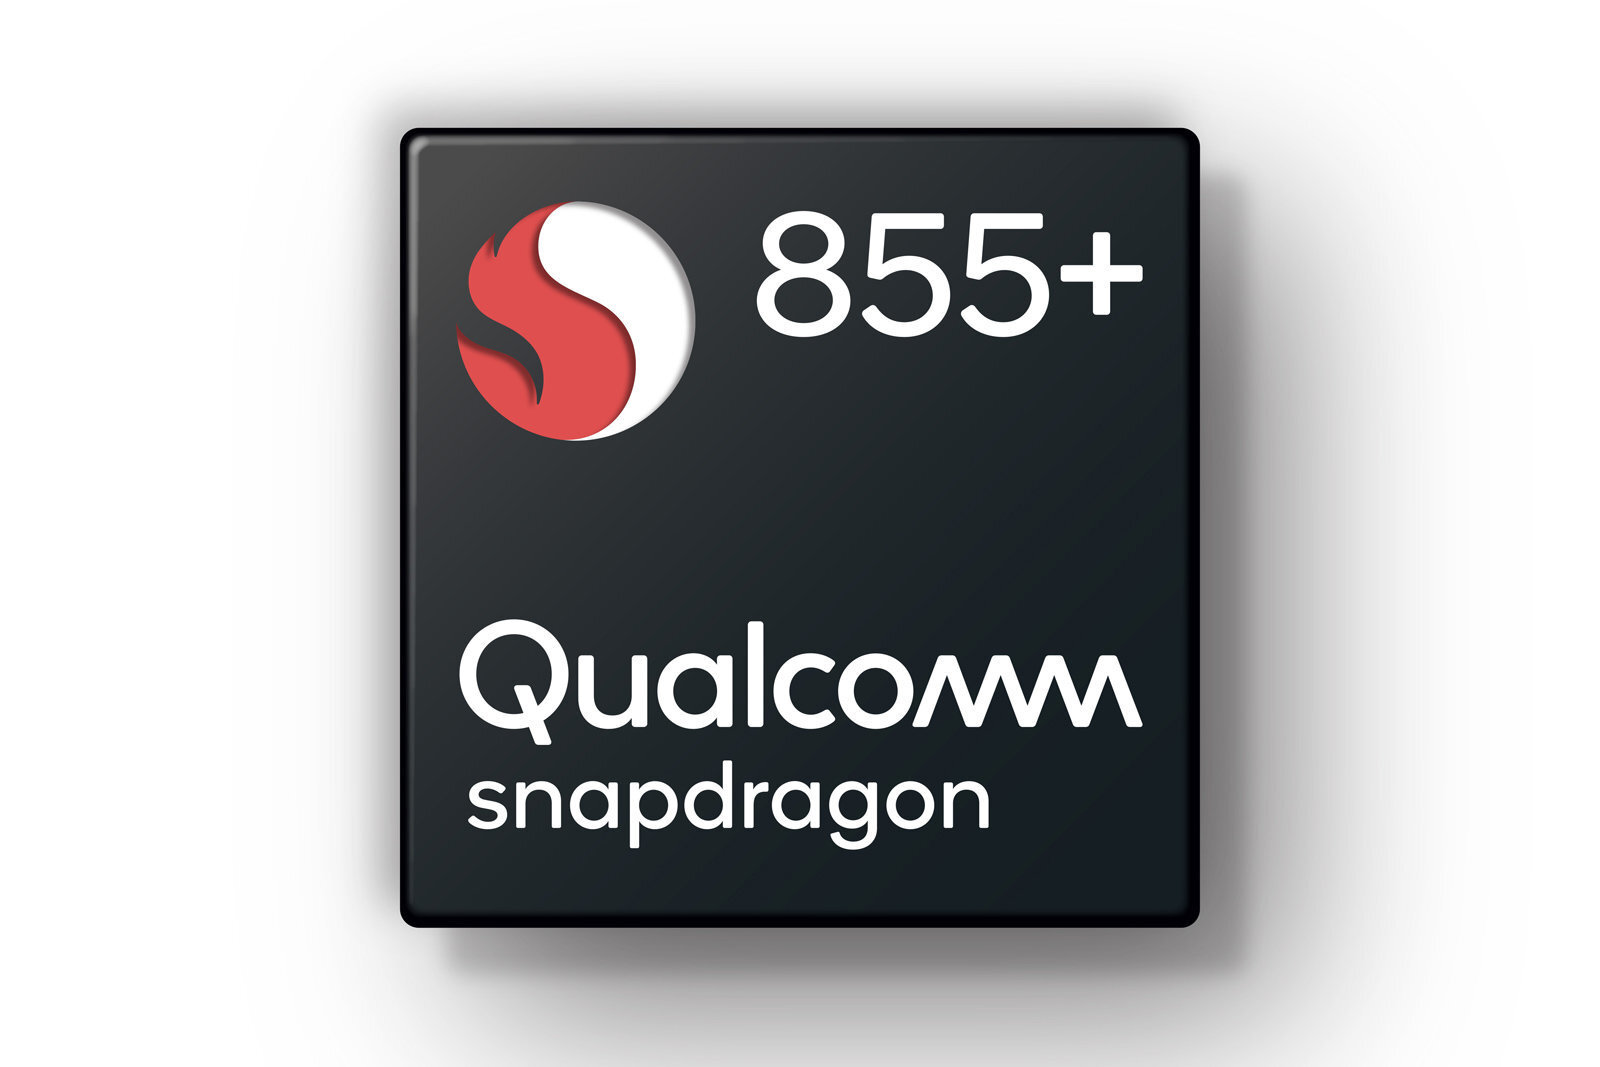 Η Qualcomm ανακοίνωσε το Snapdragon 855+ με 15% ταχύτερη GPU